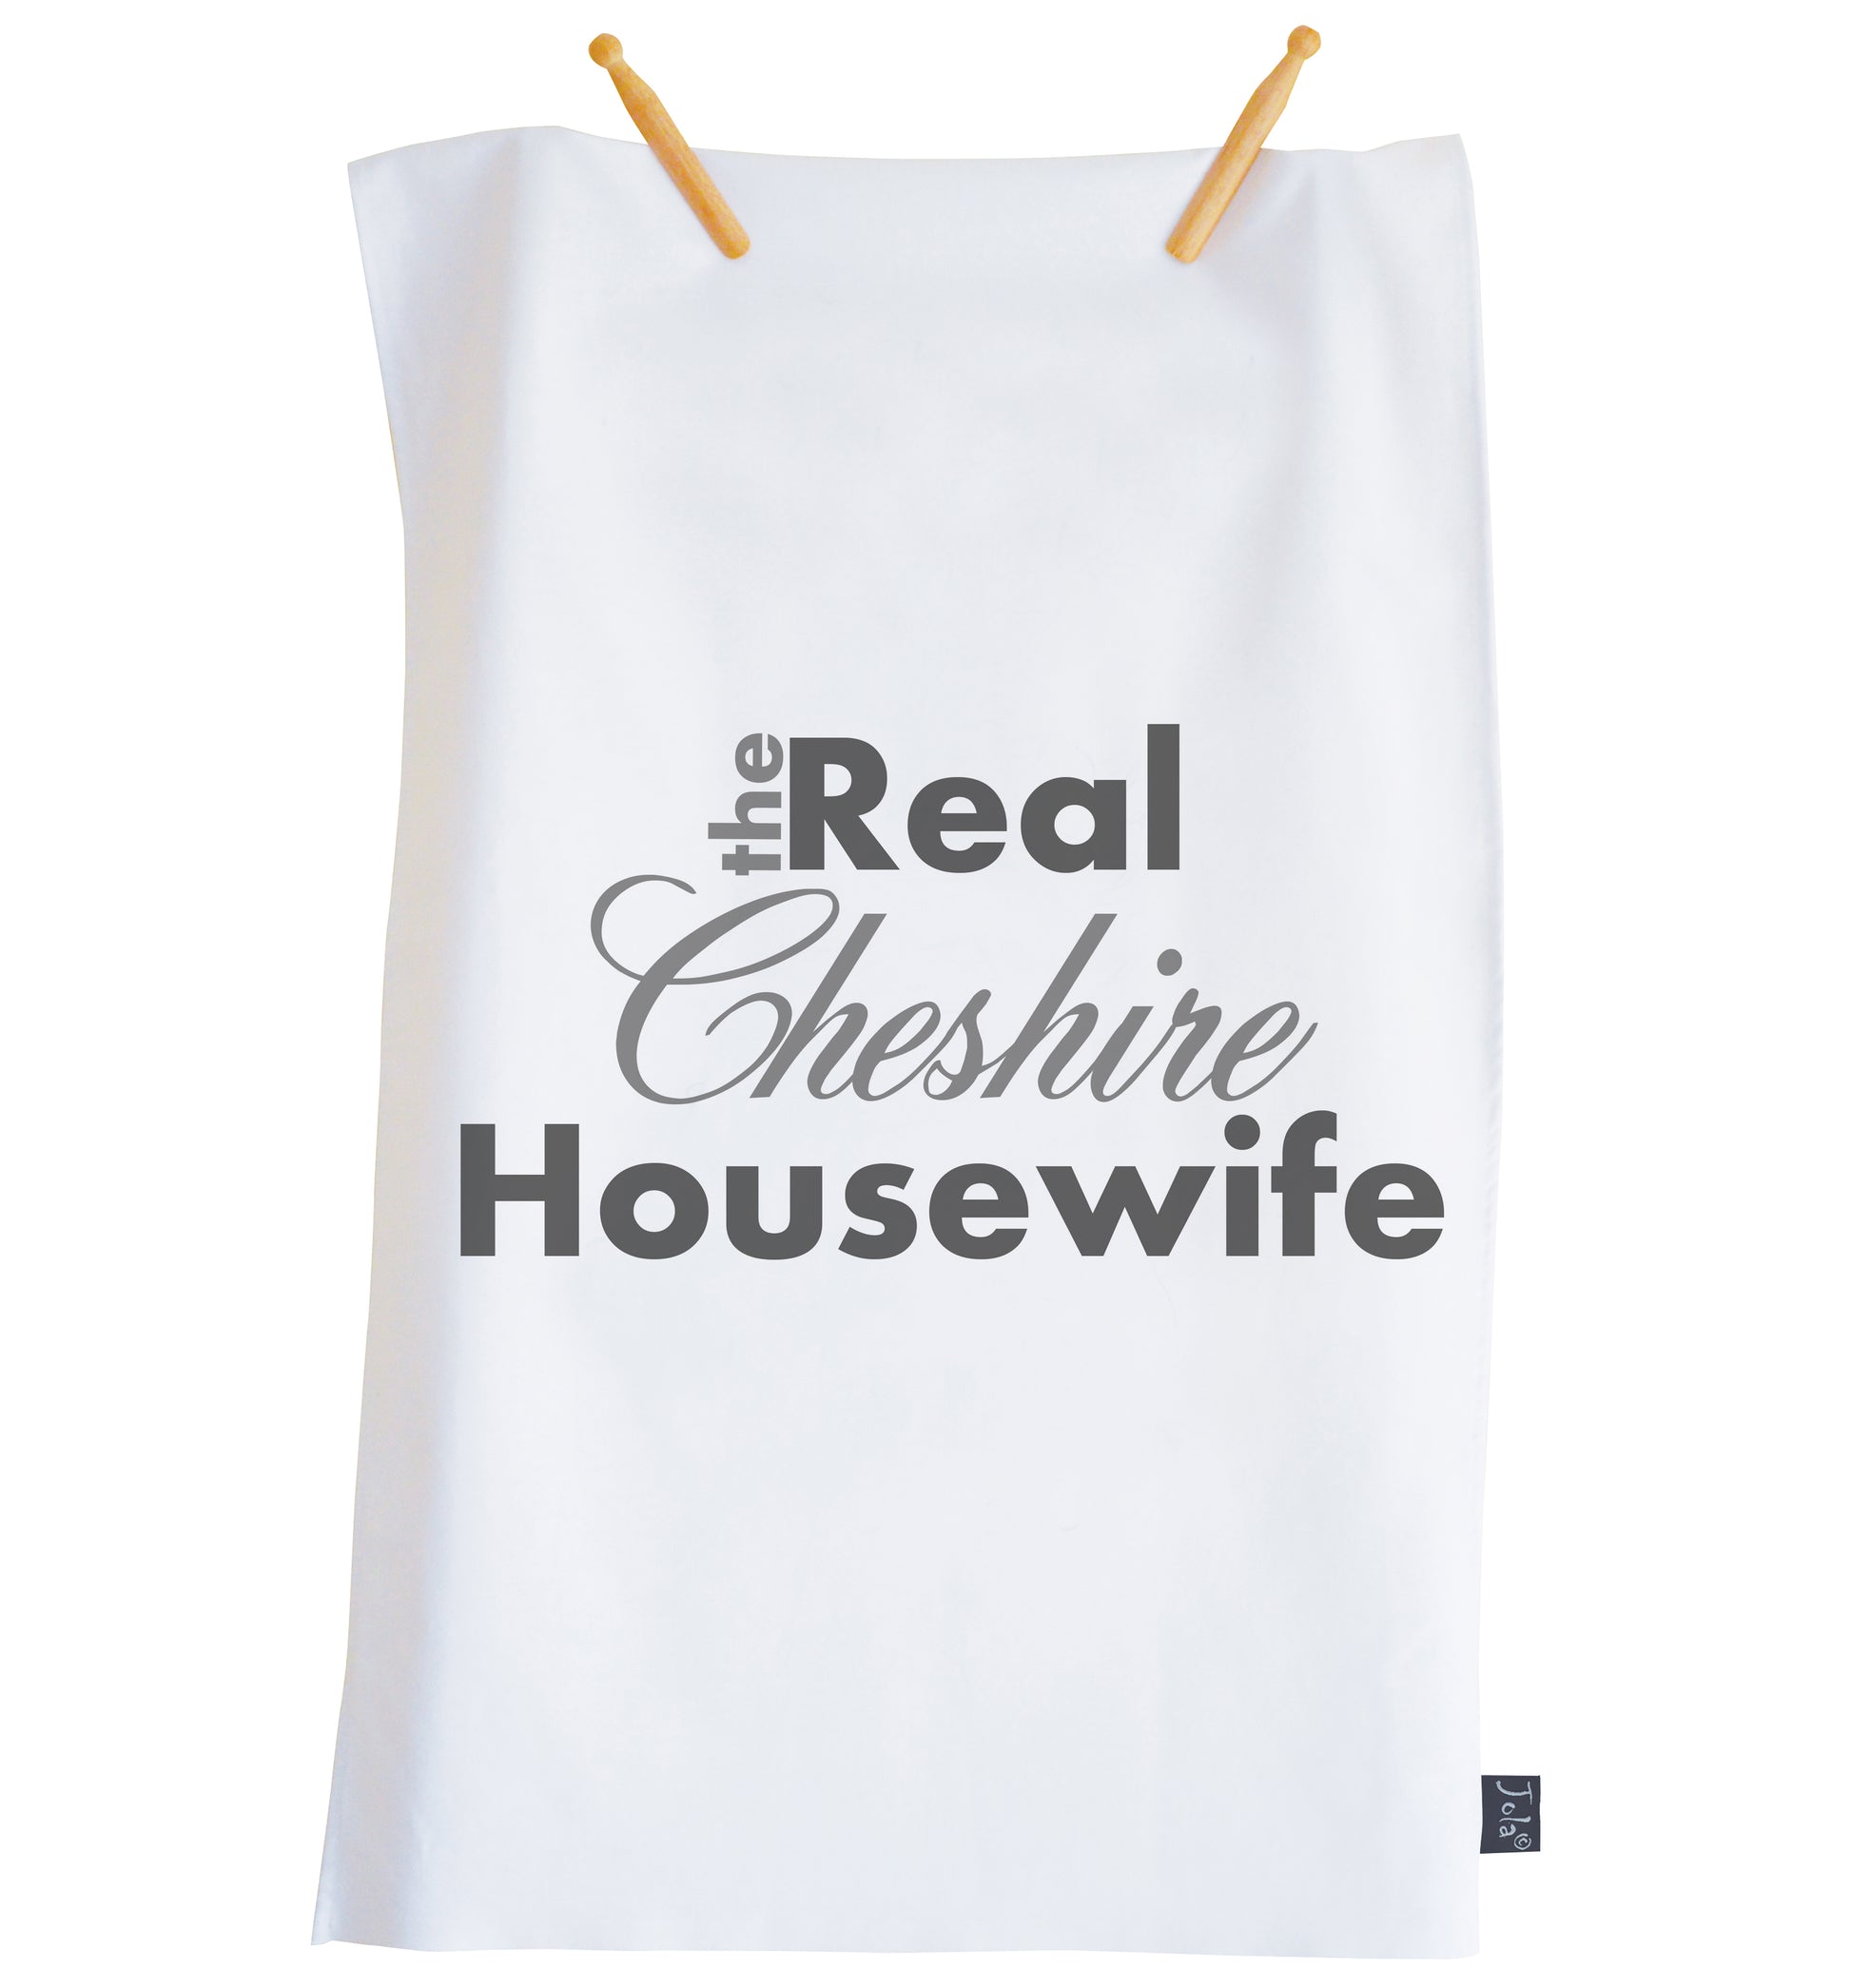 Personalised The Real Housewife Tea Towel - Jola Designs